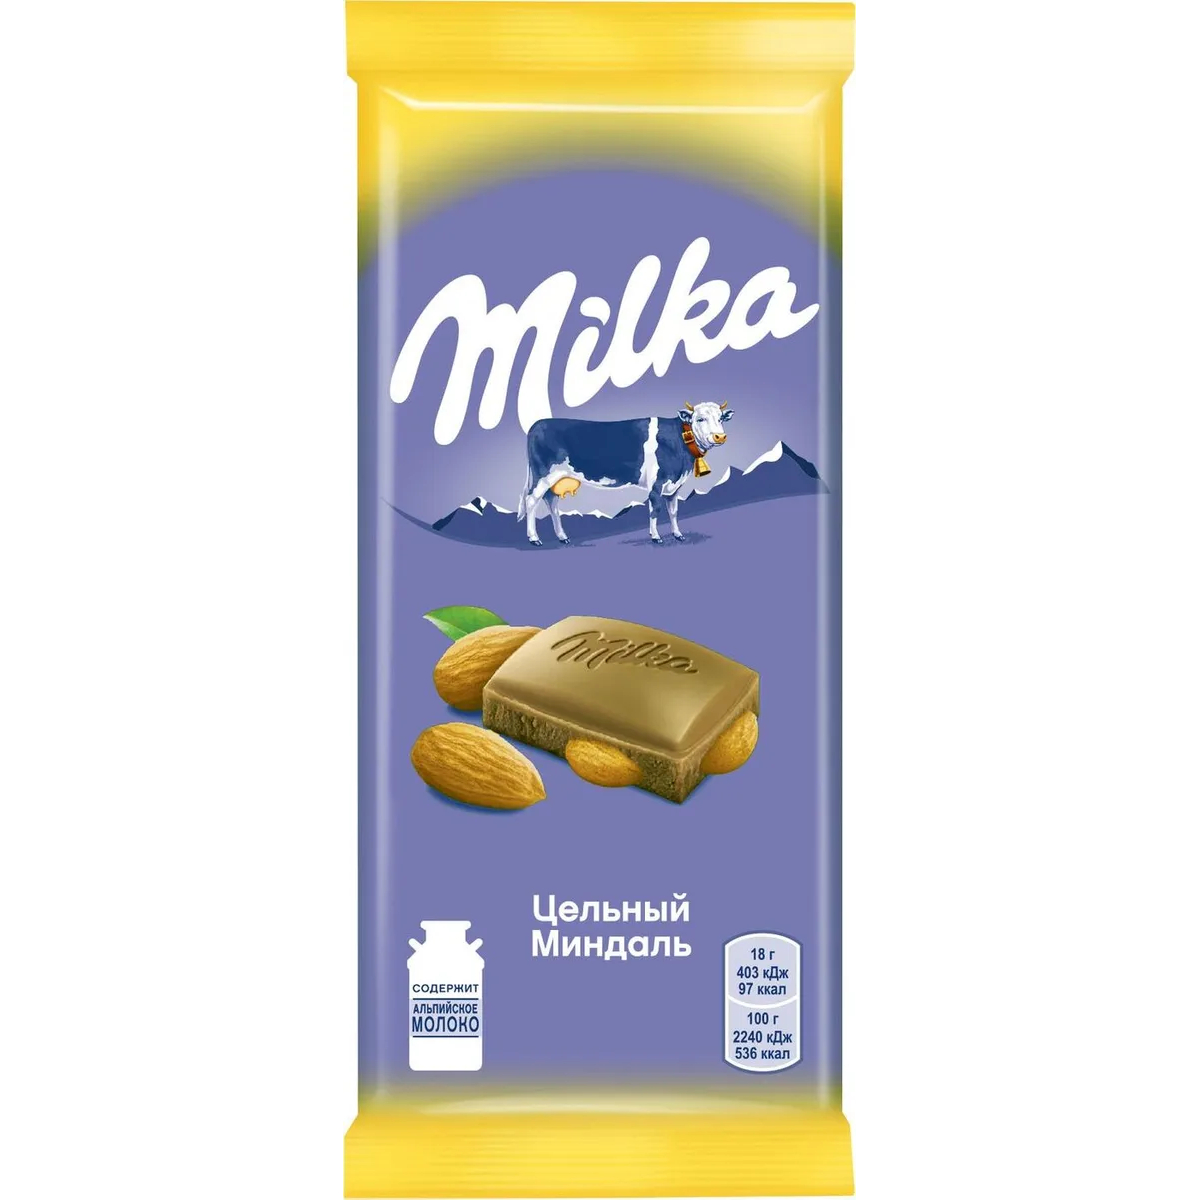 Шоколад молочный Milka с цельным миндалём, 85 г шоколад победа вкуса max energy молочный 36% какао без сахара 100 гр